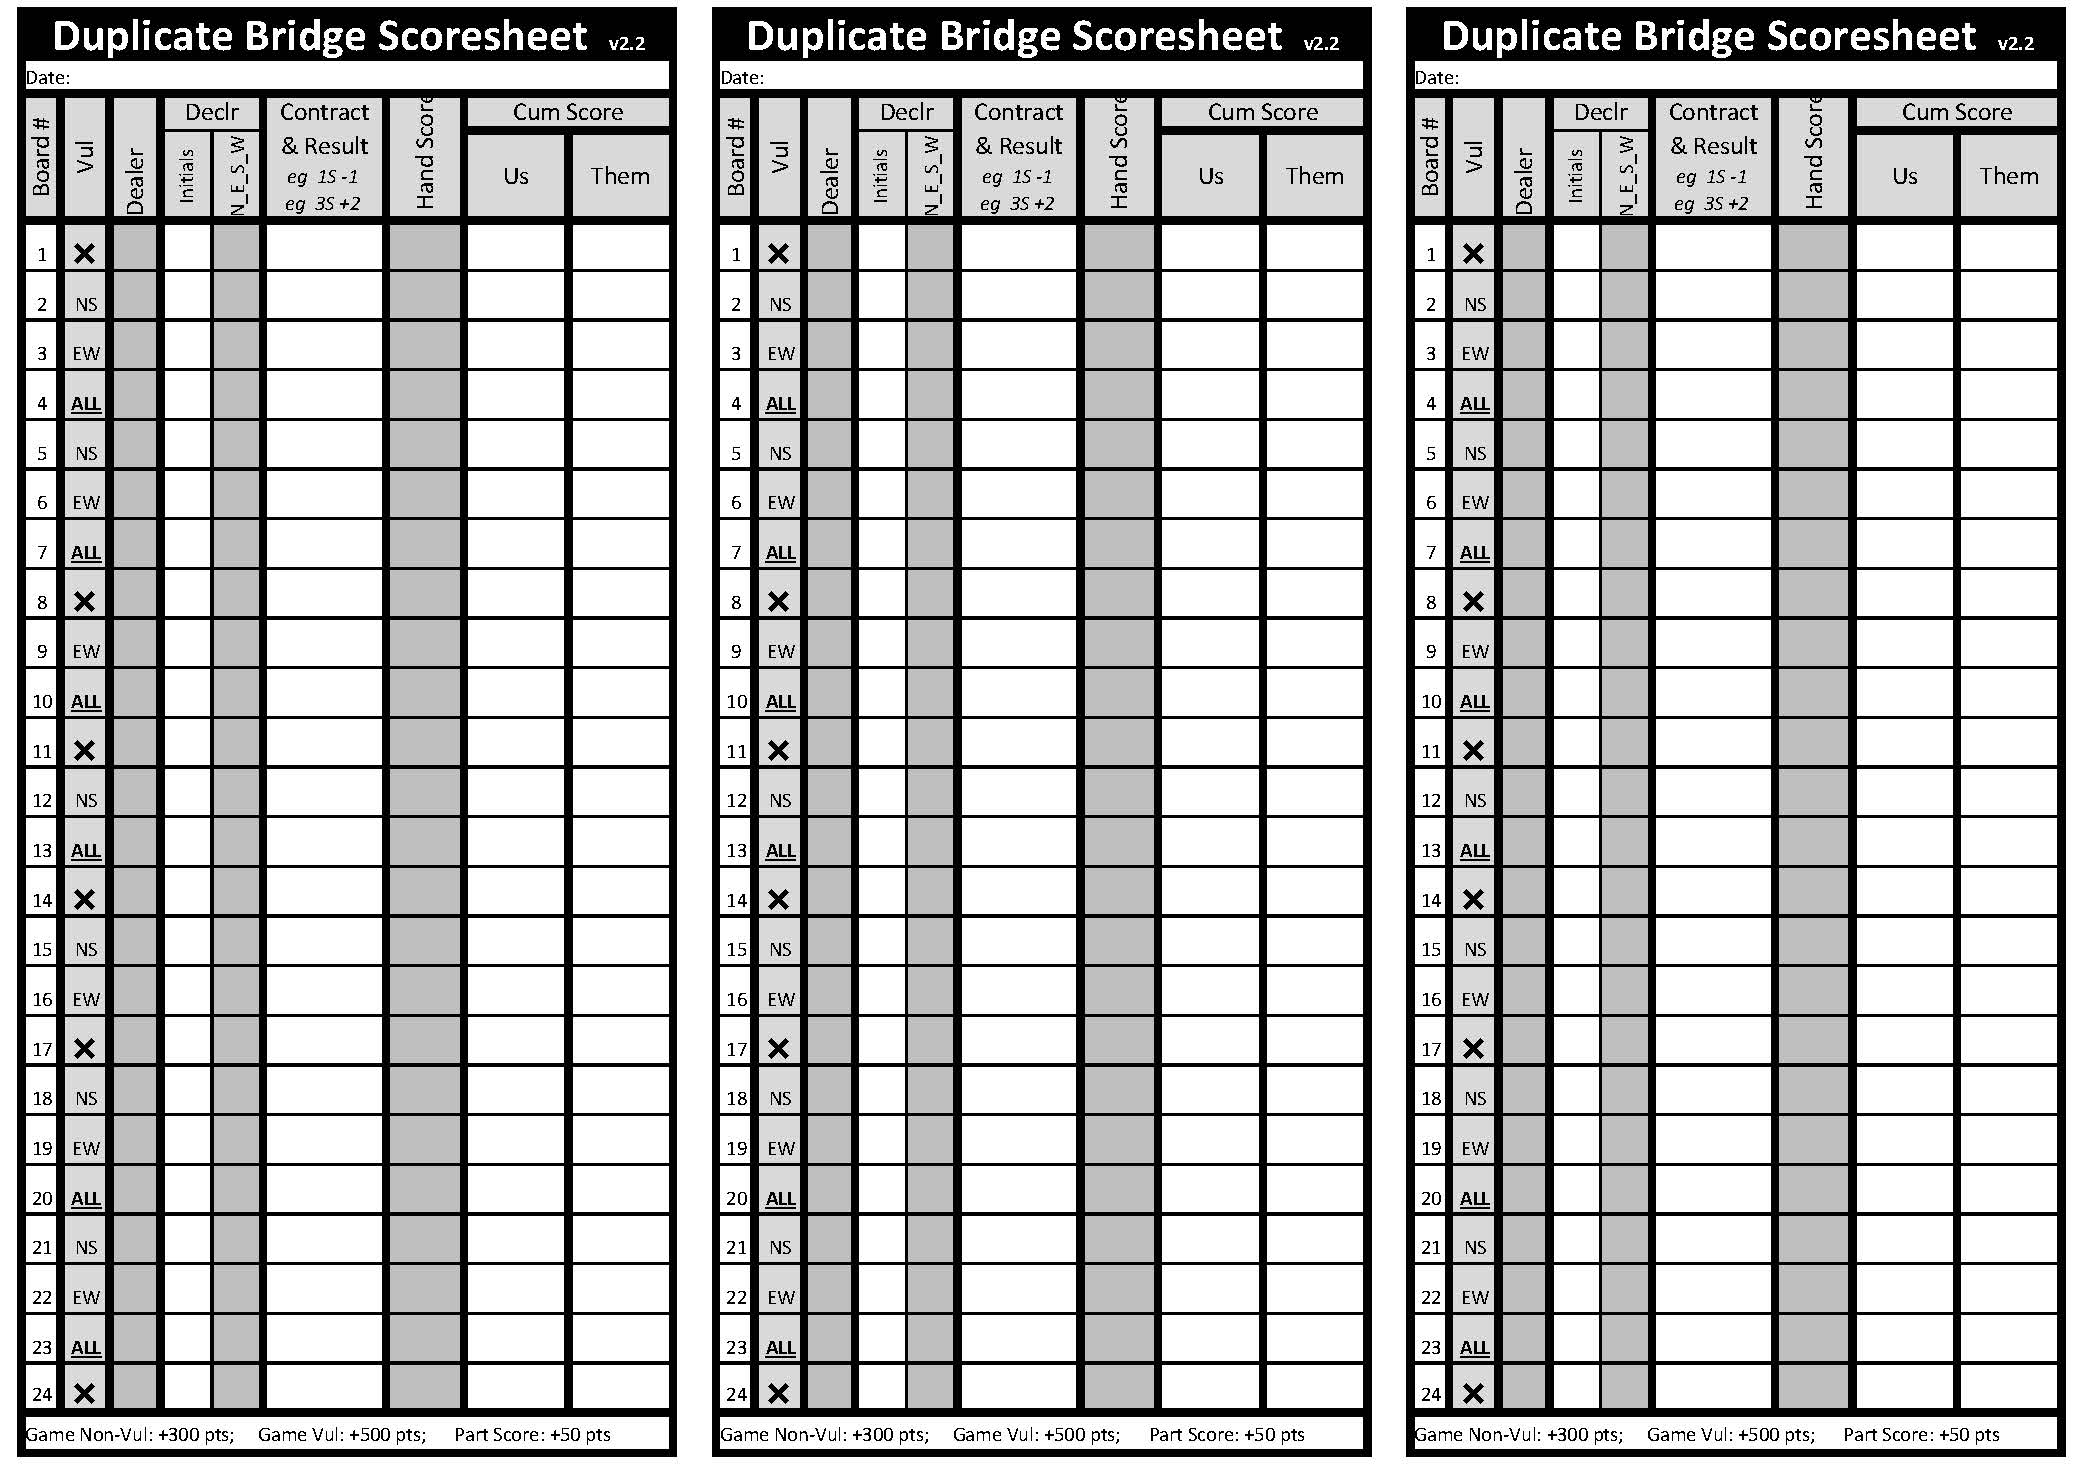 ▲ A Duplicate Bridge Scoresheet